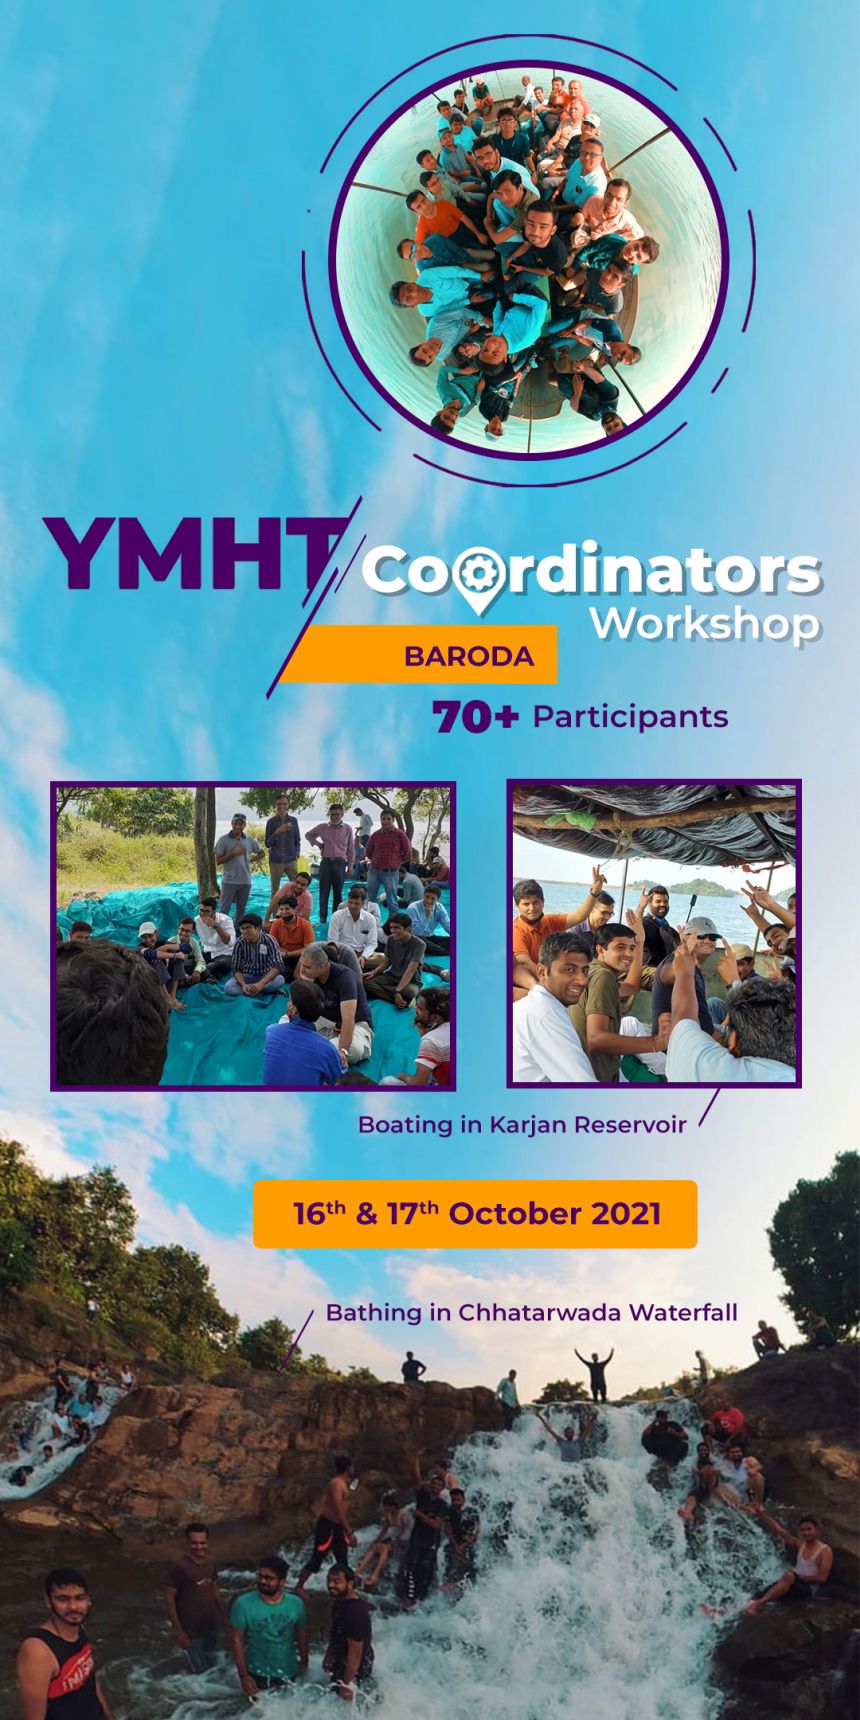 YMHT COORDINATORS WORKSHOP 2021 @ BARODA TRIMANDIR